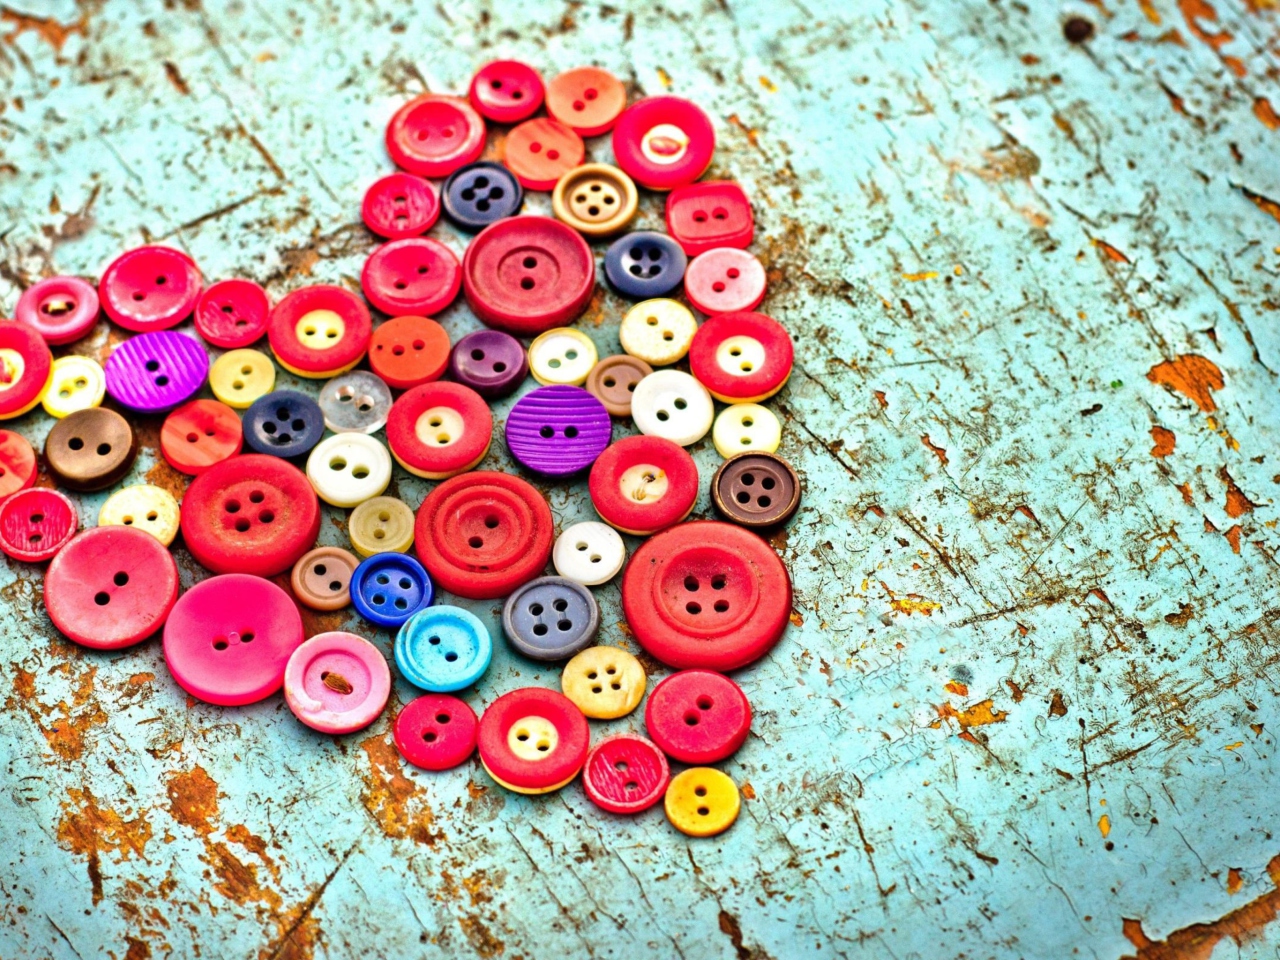 Das Heart of the Buttons Wallpaper 1280x960